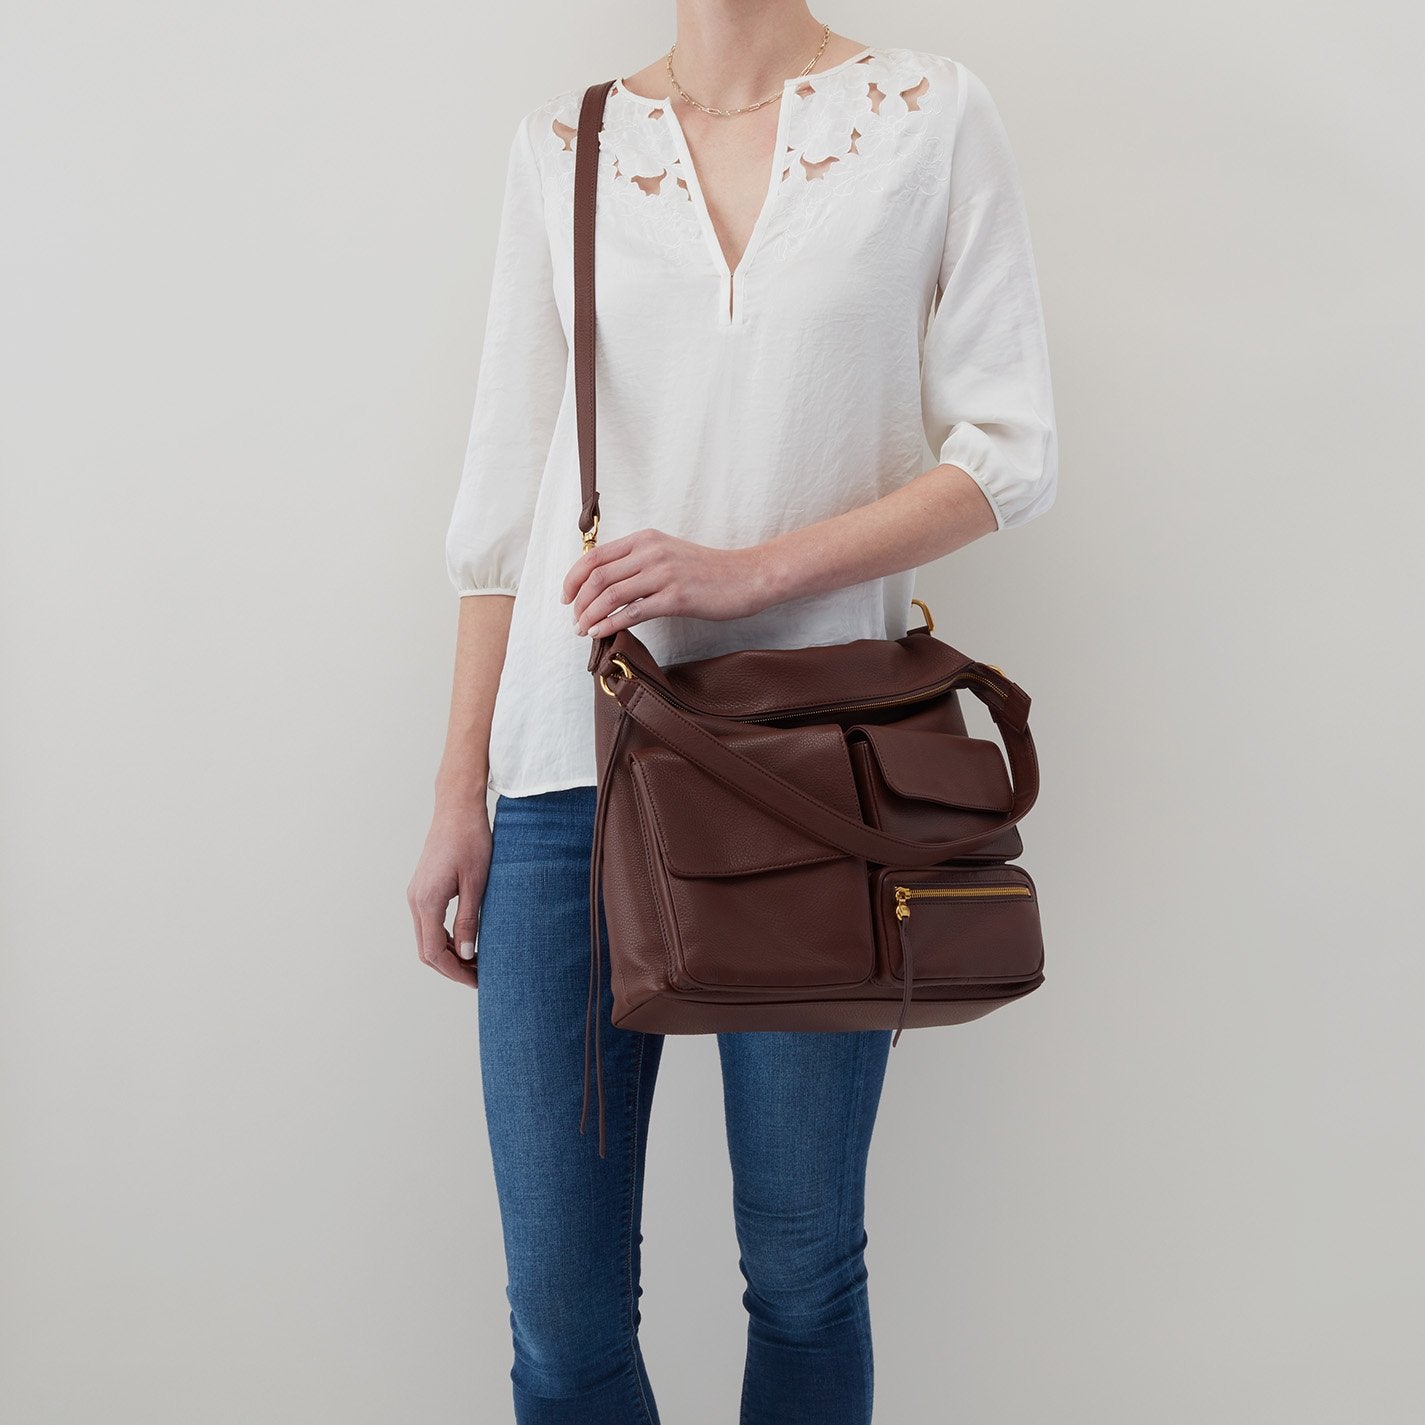 Details about   NWT $299 Designer SPORTSCRAFT Selina Genuine LEATHER Hobo Shoulder Bag Raspberry 